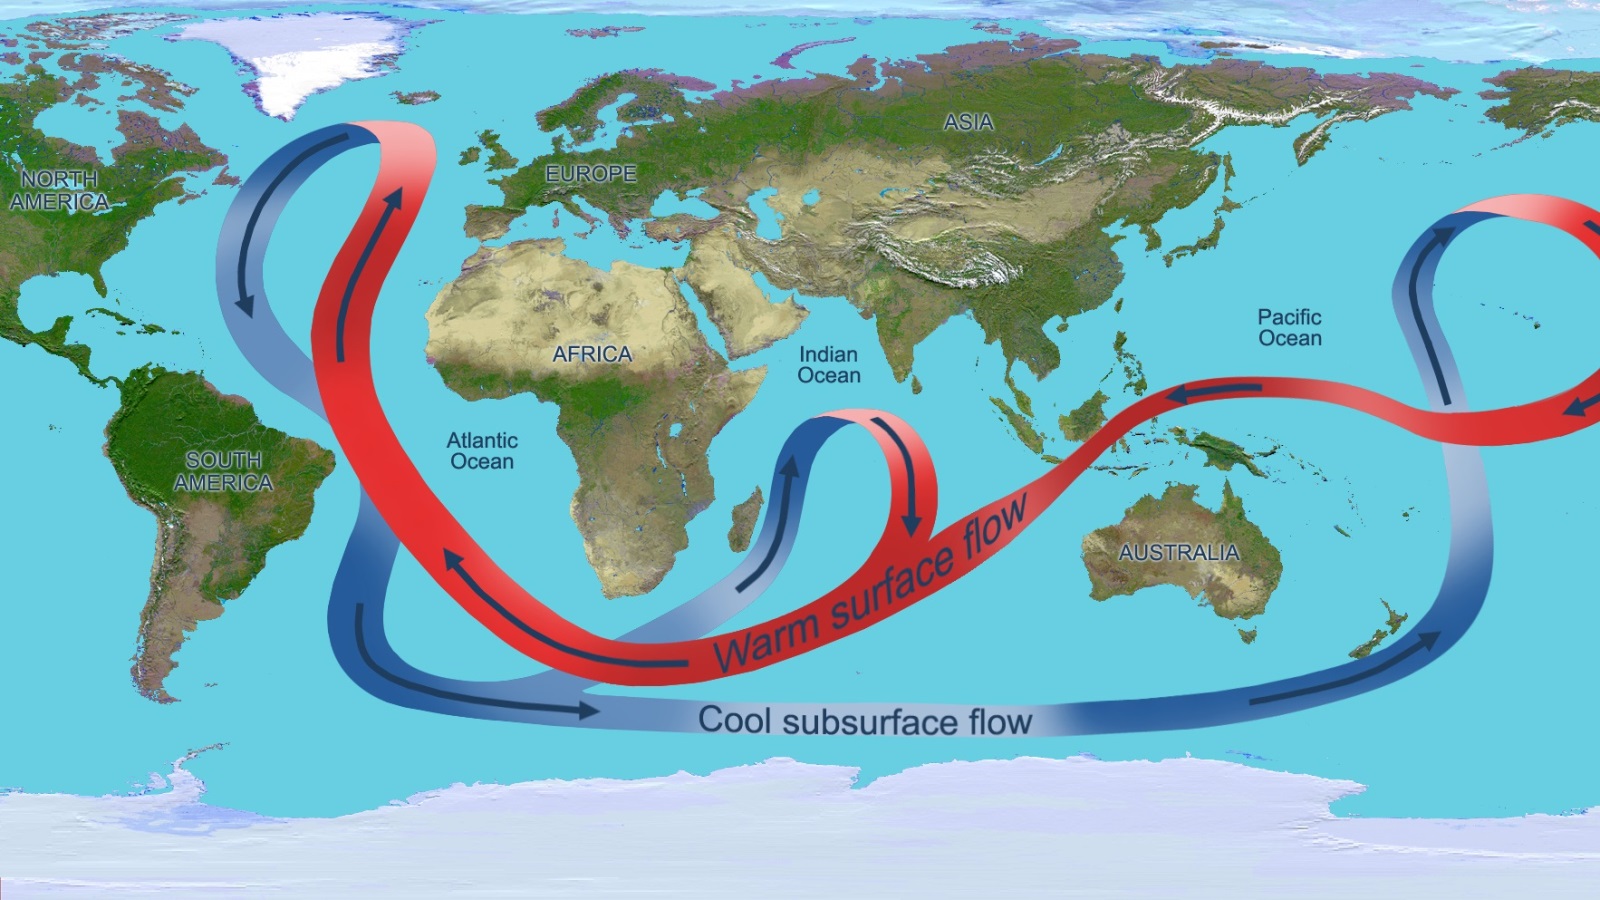 ‪تغير المناخ يزيد تسارع التيارات المحيطية بالمناطق المدارية فوق المحيط الأطلسي (ويكيميديا كومونز)‬ تغير المناخ يزيد تسارع التيارات المحيطية بالمناطق المدارية فوق المحيط الأطلسي (ويكيميديا كومونز)